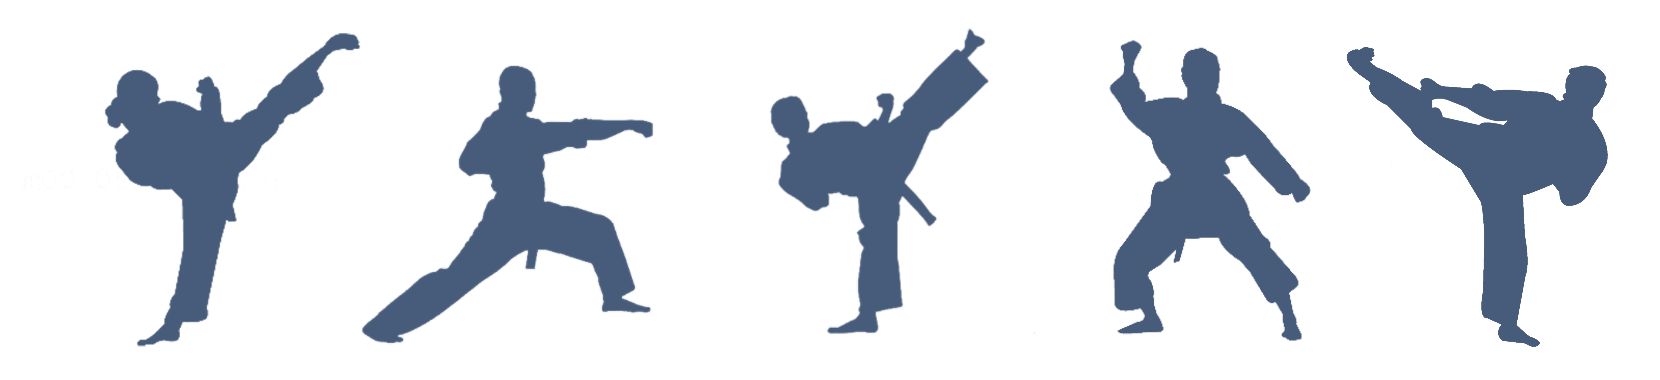 الركل Taekwondo PNG الموافقة المسبقة عن علم